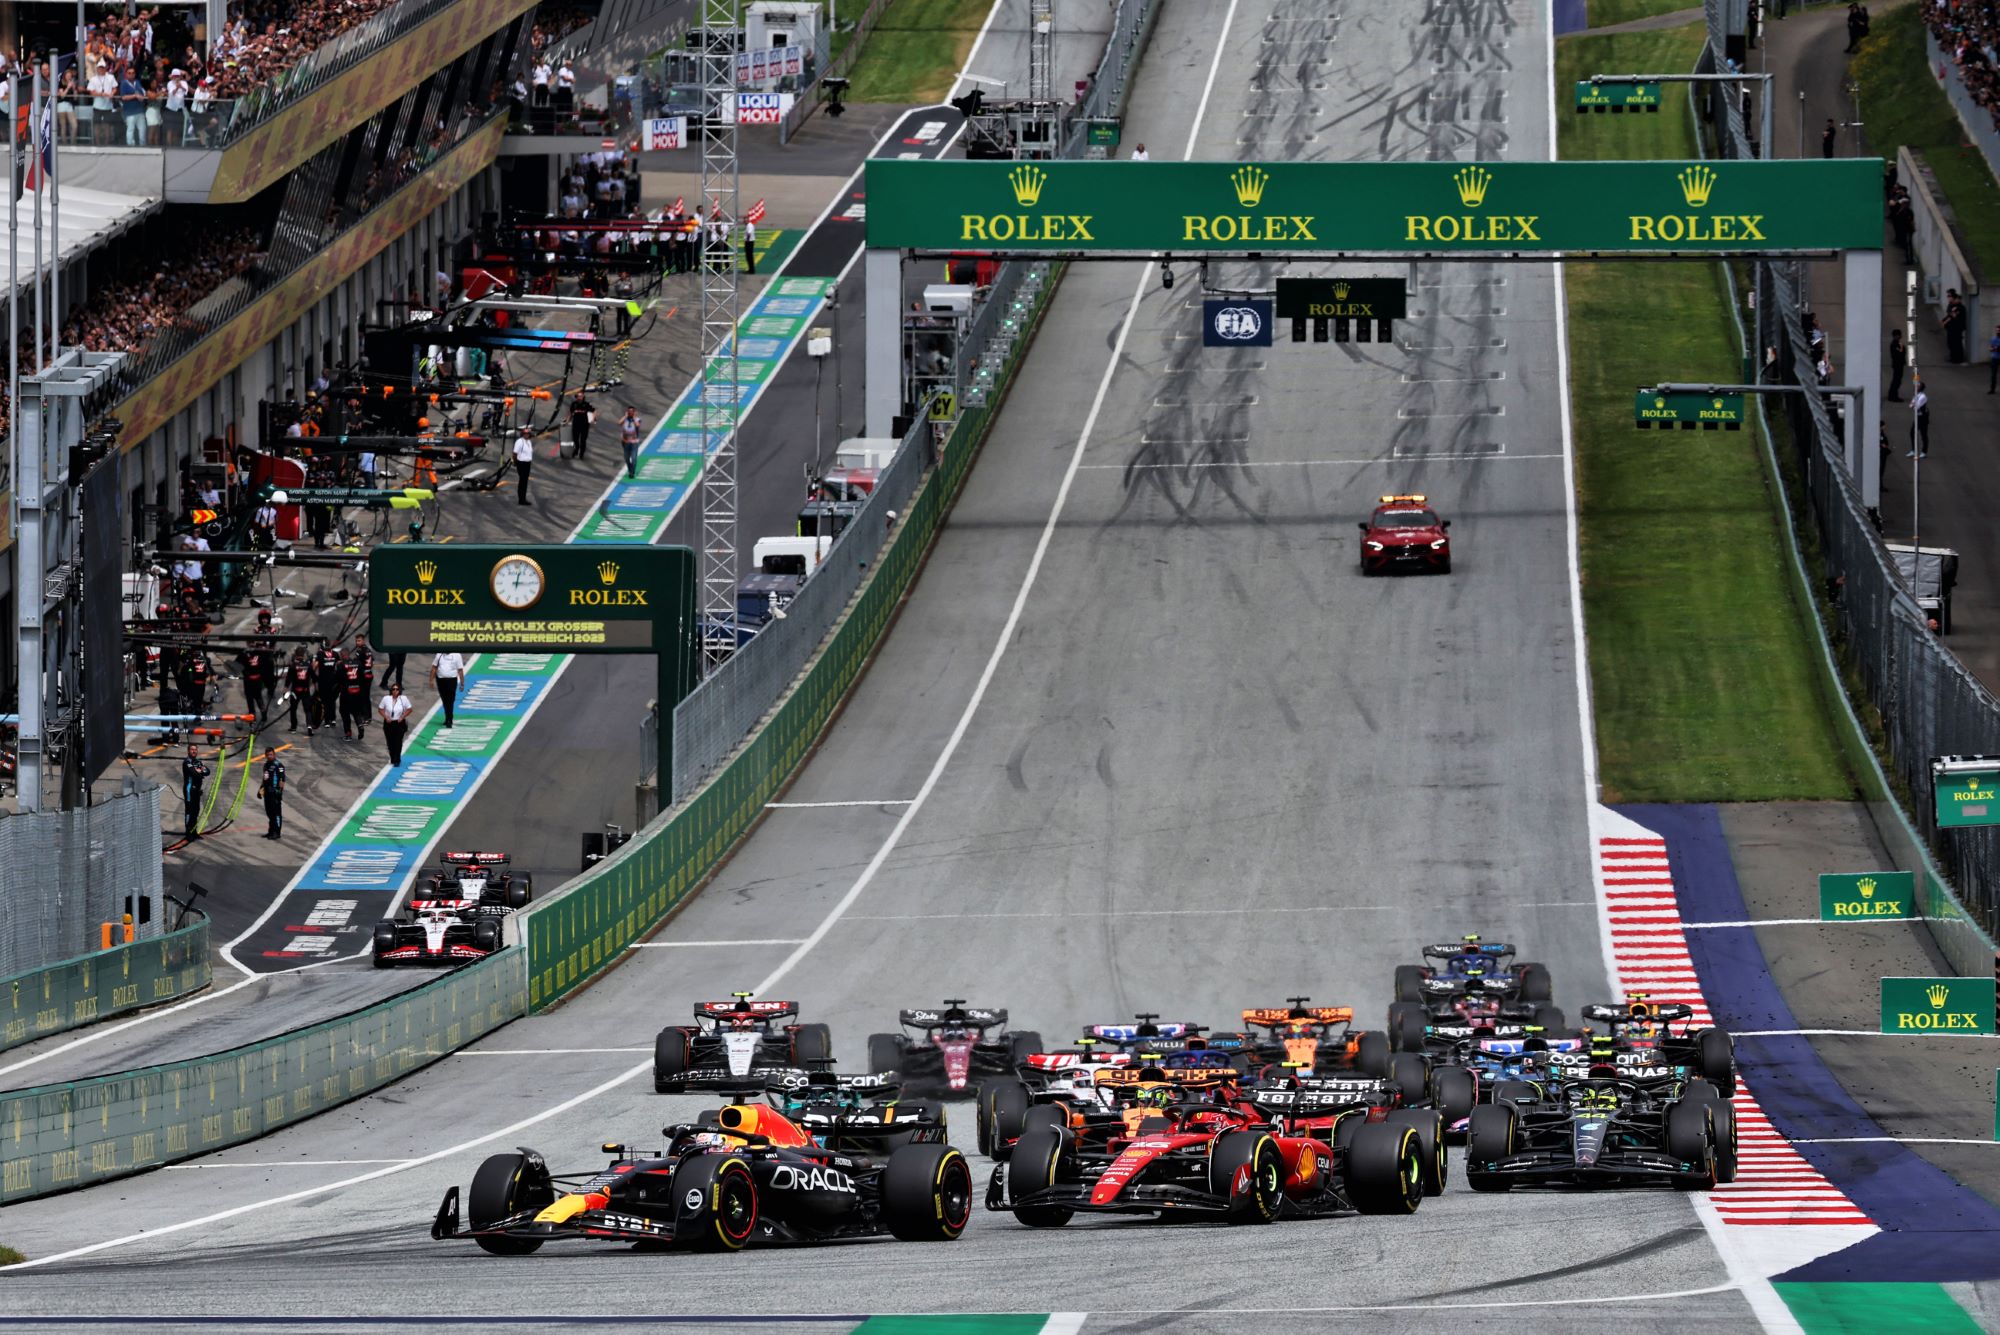 F1: Resultado do GP da Áustria será atualizado após penalizações não aplicadas quanto aos limites de pista